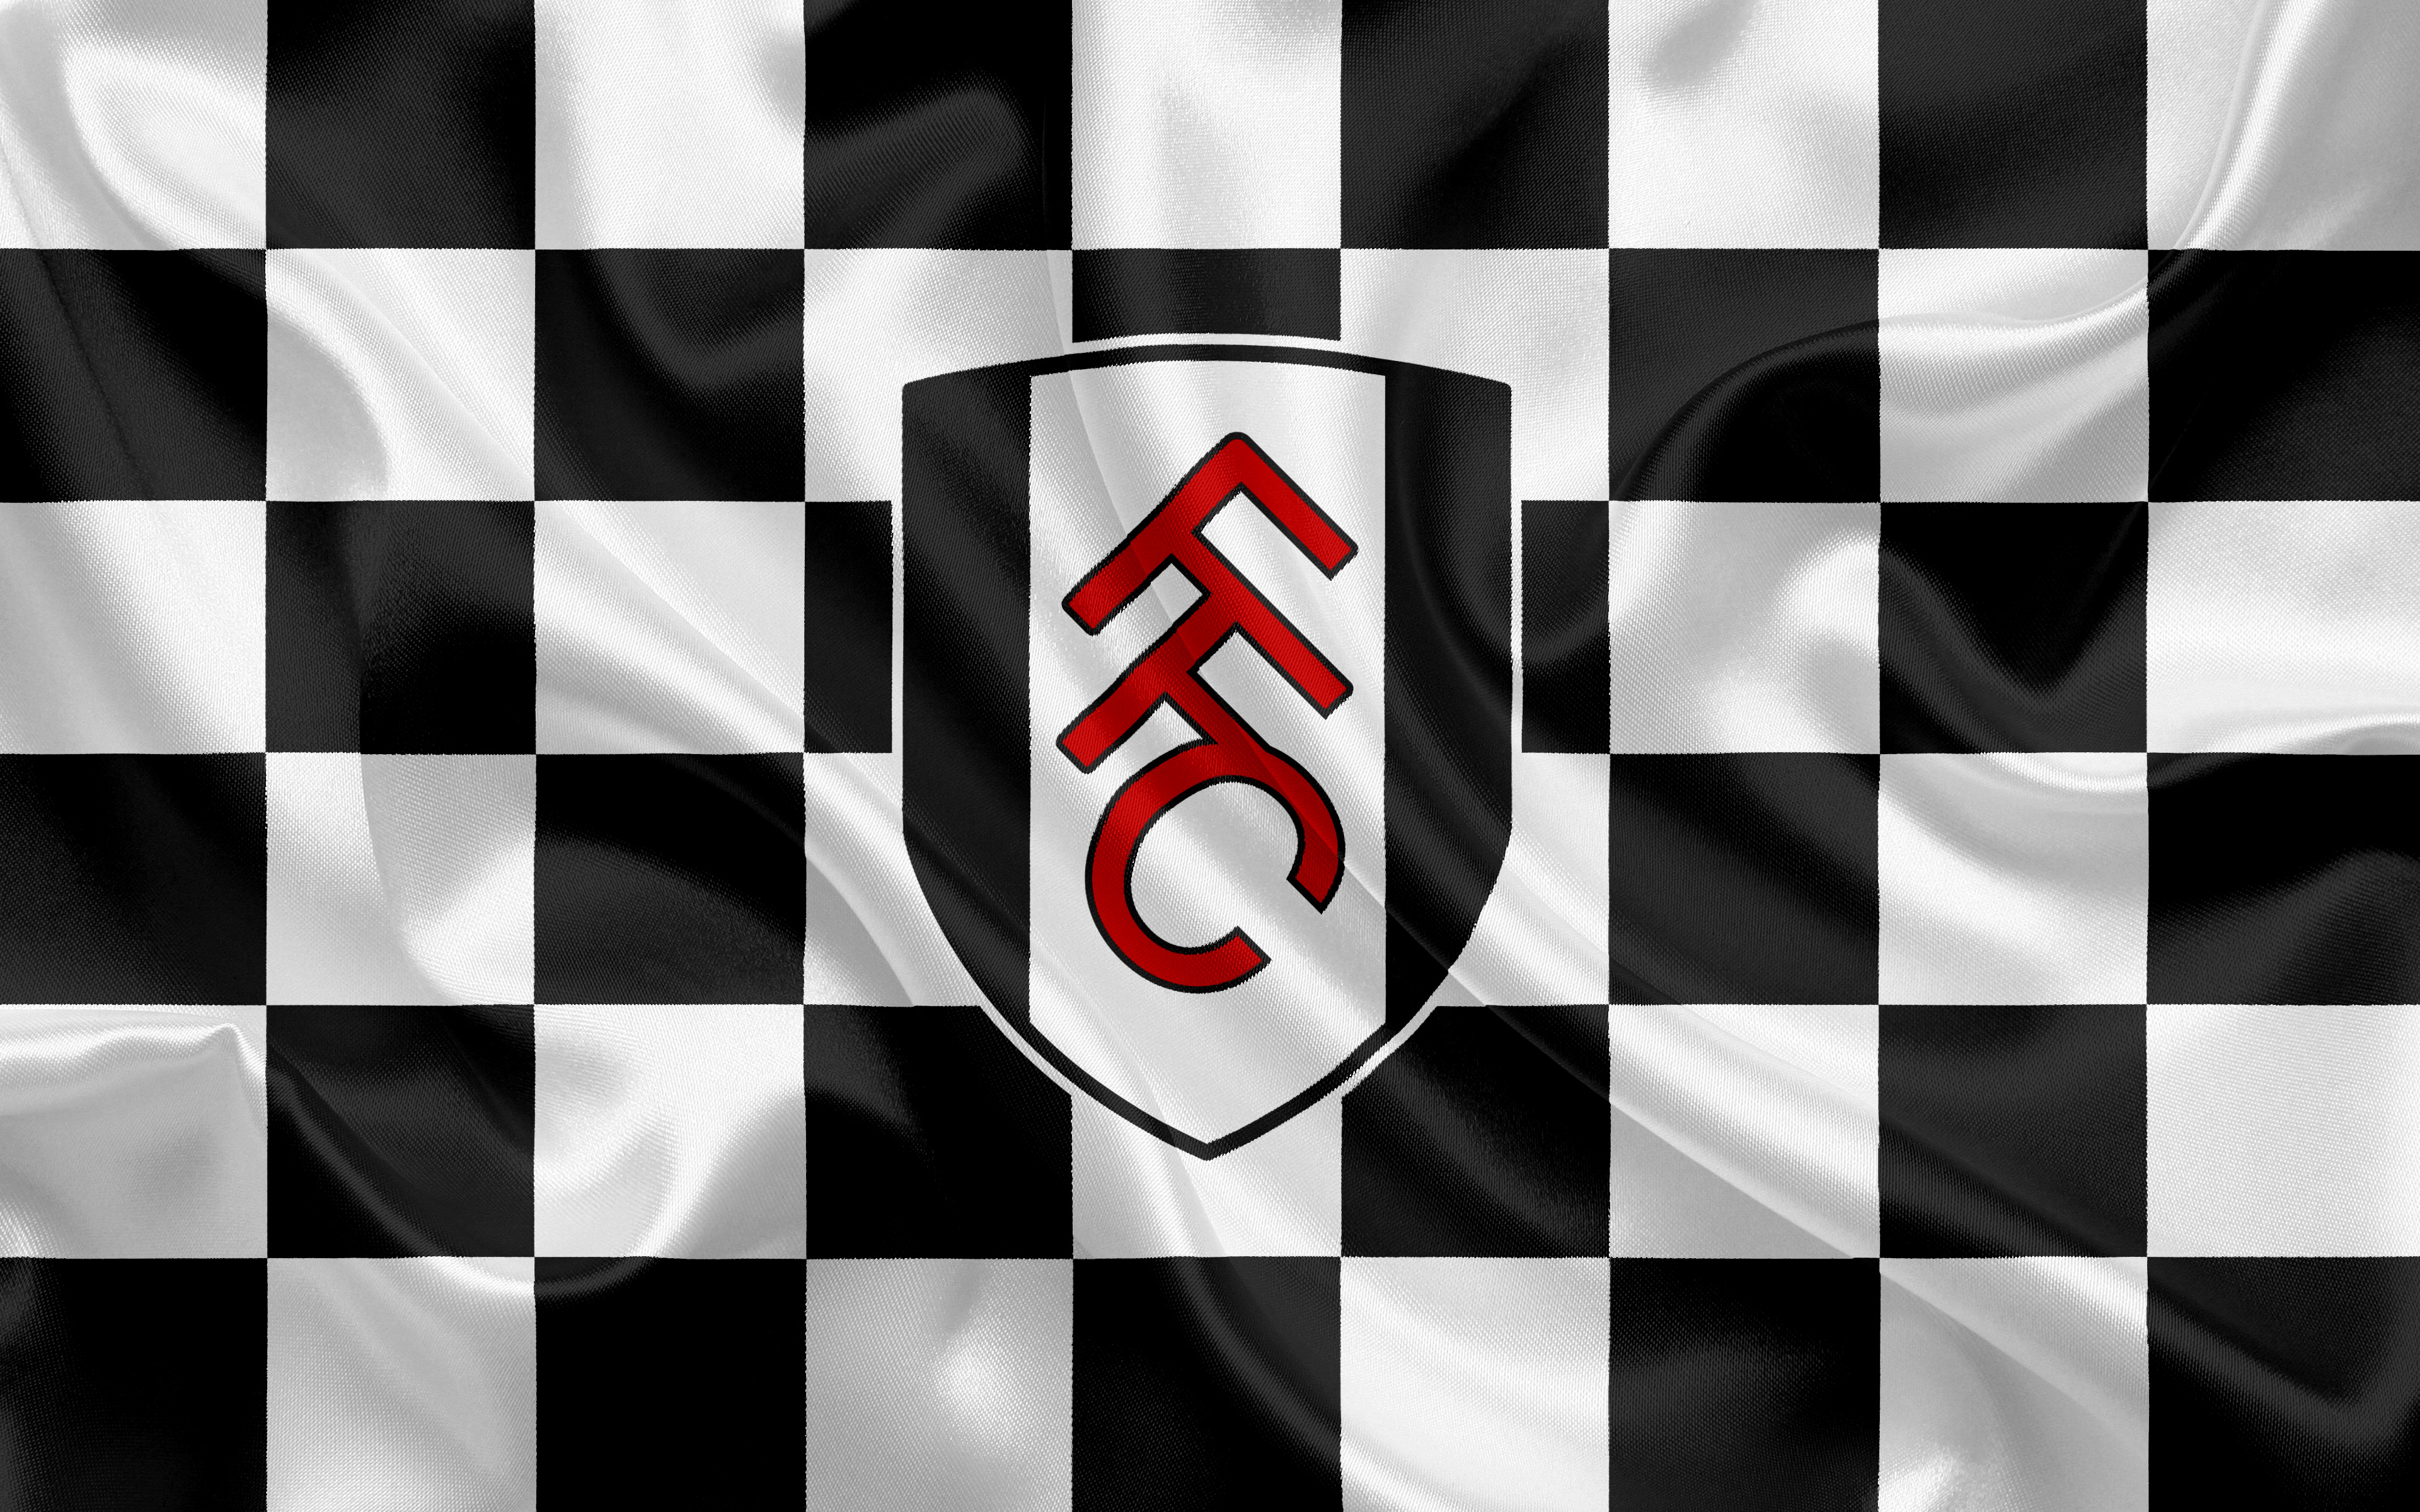 Emblem Fulham F C Logo Soccer 3840x2400